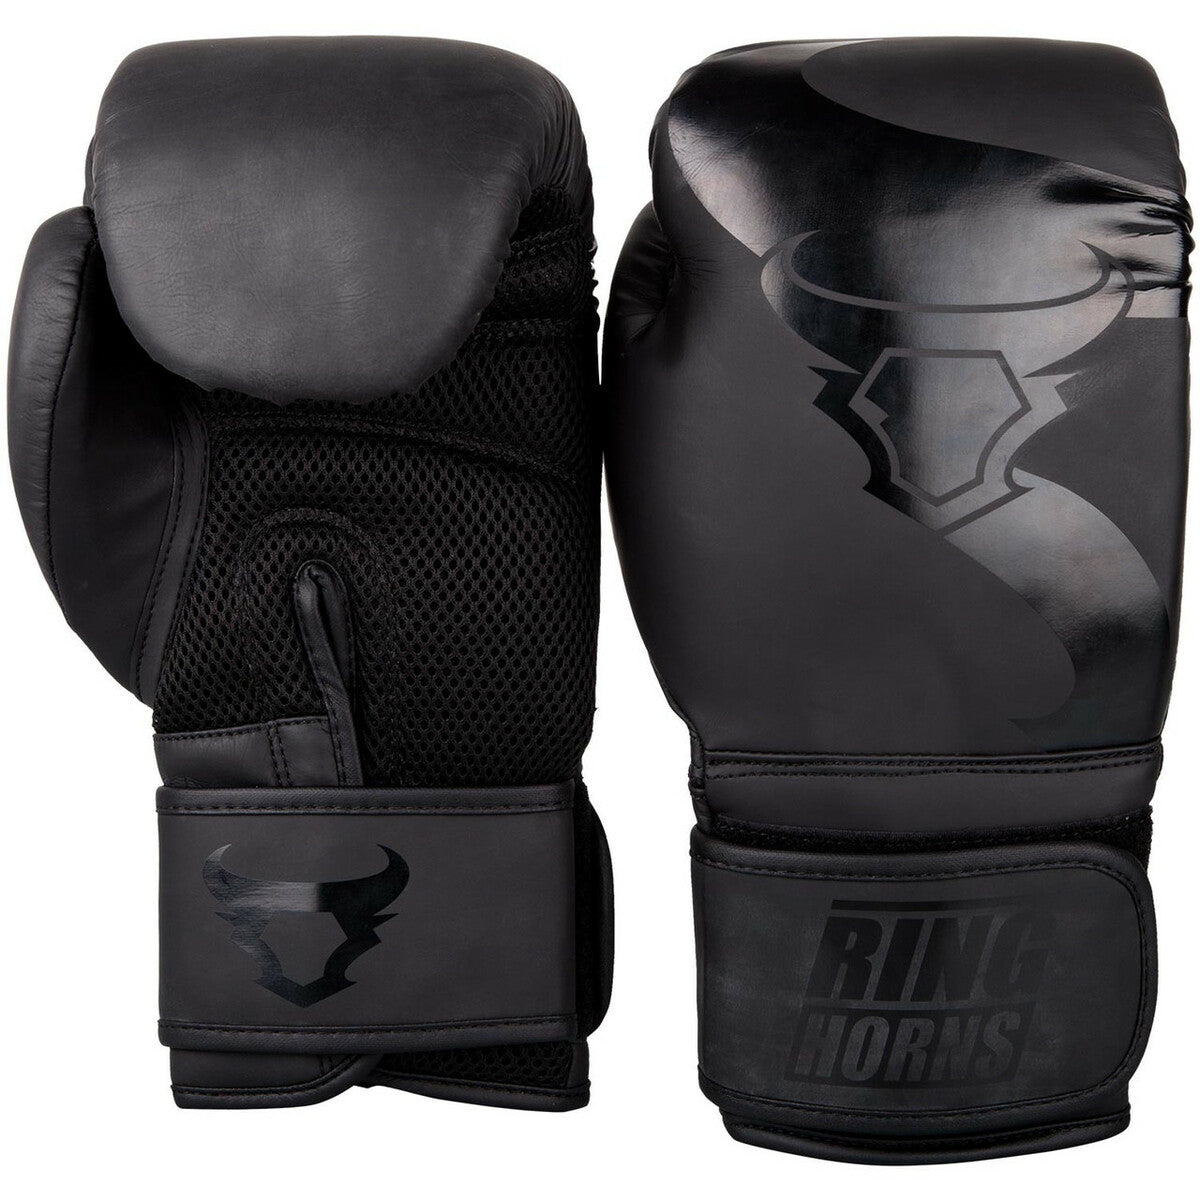 Ringhorns Charger Boxing Gloves Black/Black